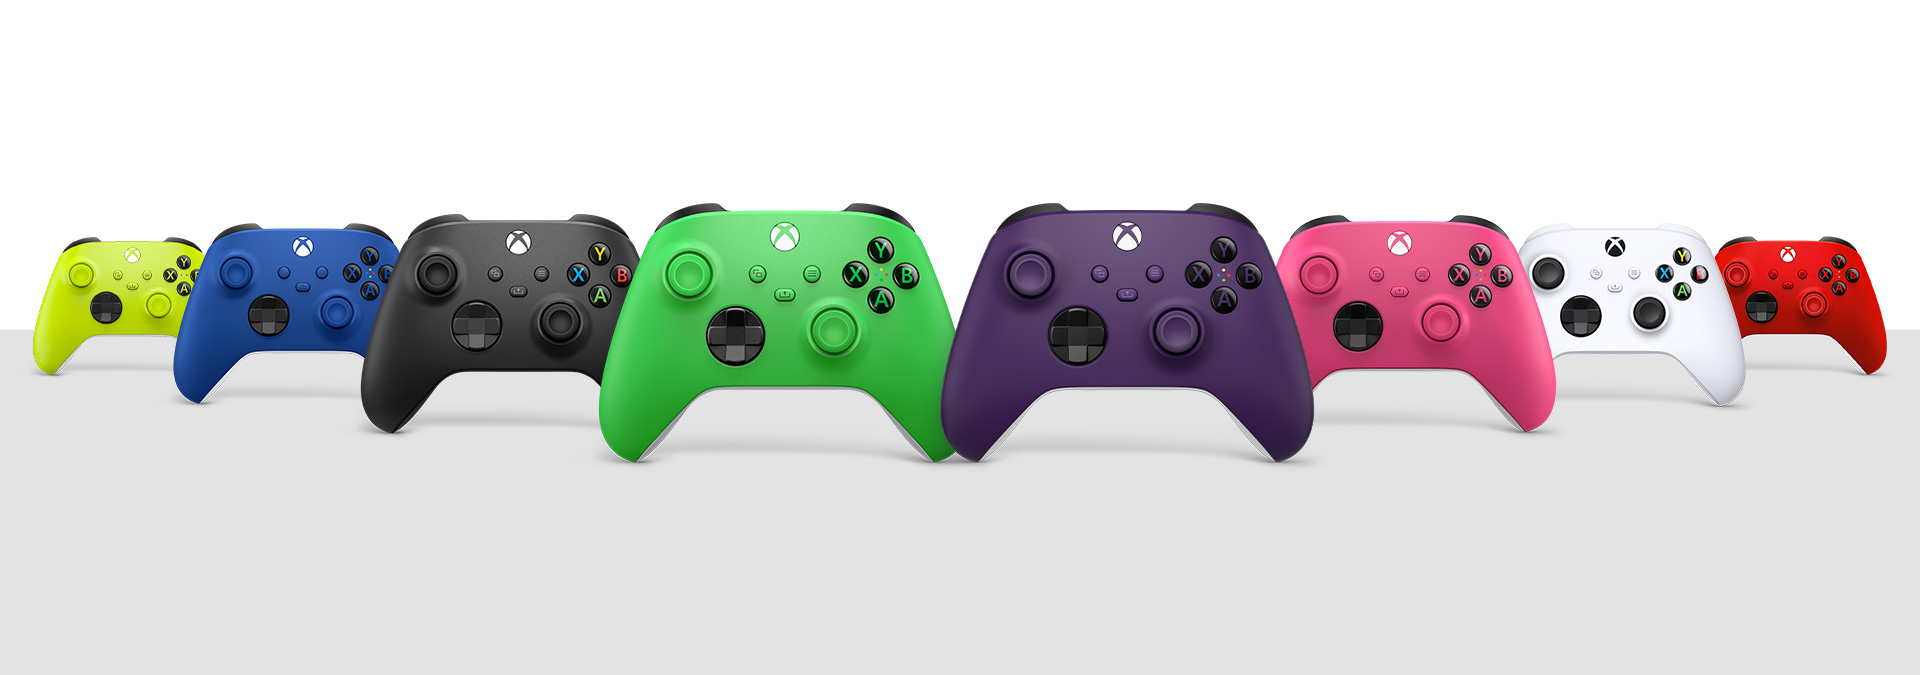 Vezeték nélküli Xbox-kontrollerek Carbon Black, Robot White, Shock Blue, Pulse Red, Electric Volt, Deep Pink, Velocity Green és Astral Purple színben